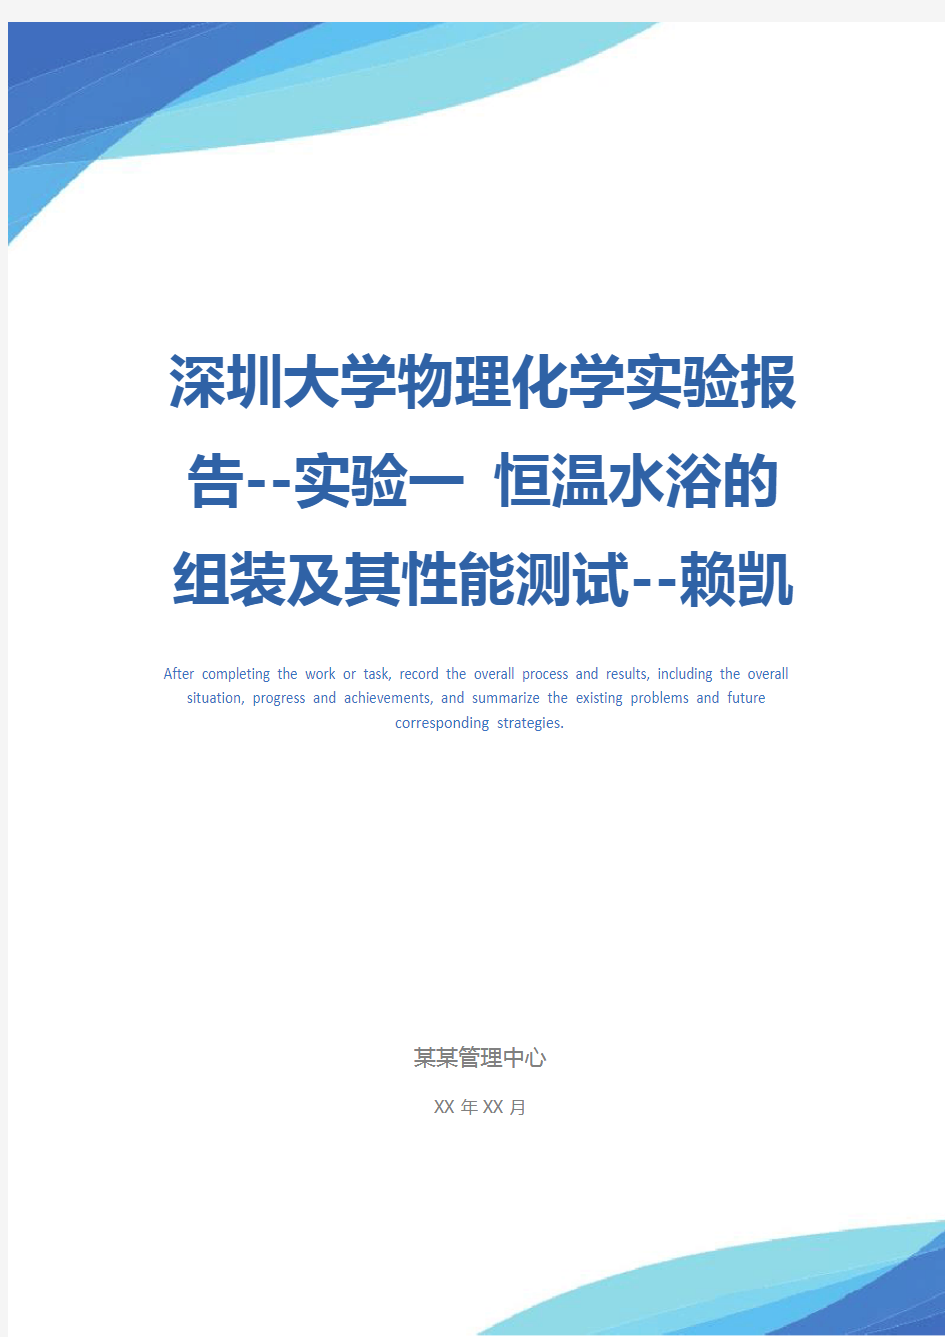 深圳大学物理化学实验报告--实验一 恒温水浴的组装及其性能测试--赖凯涛、张志诚示范文本